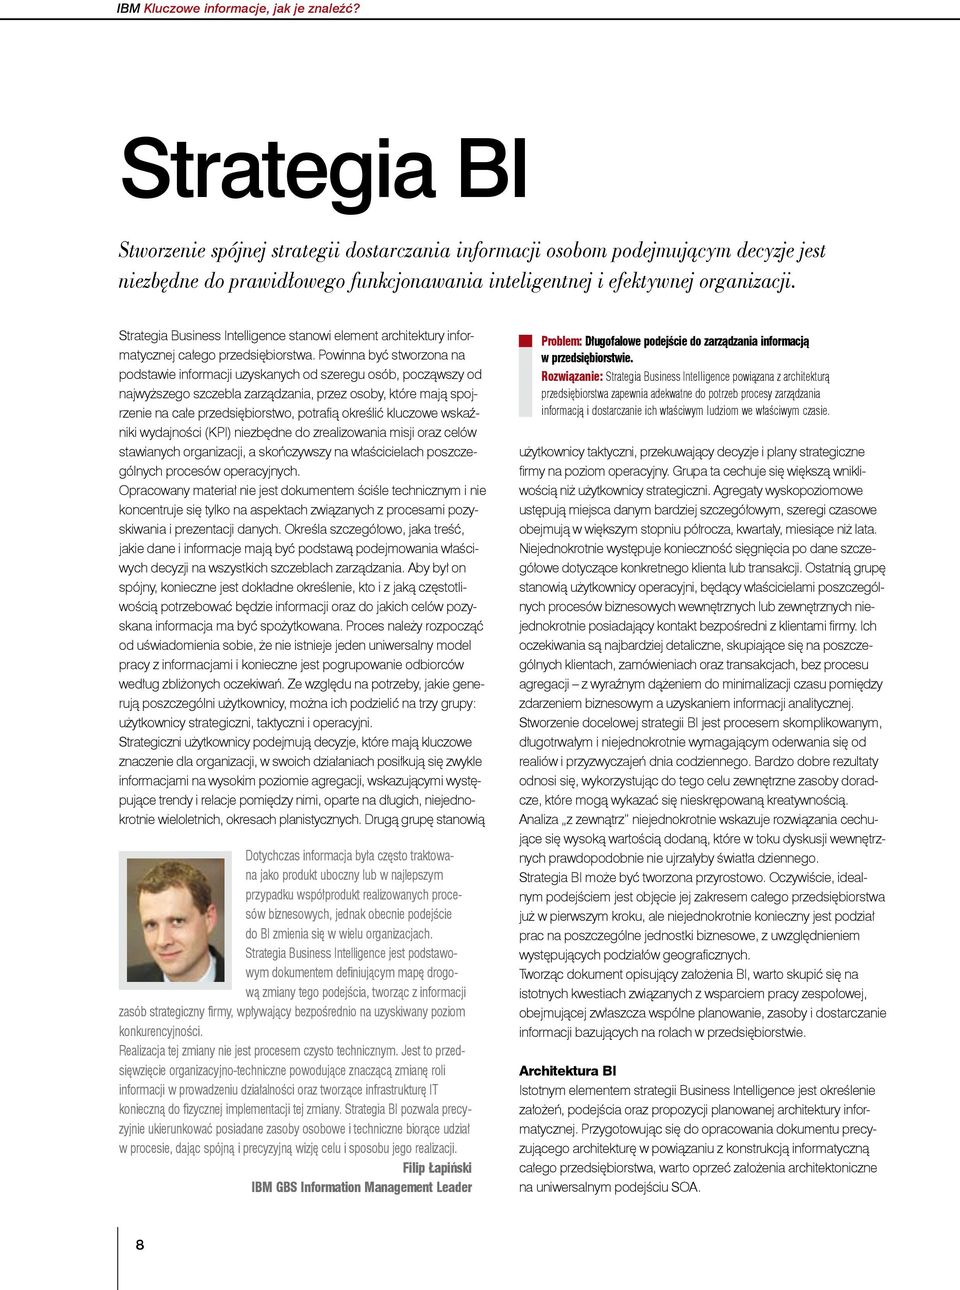 Strategia Business Intelligence stanowi element architektury informatycznej całego przedsiębiorstwa.